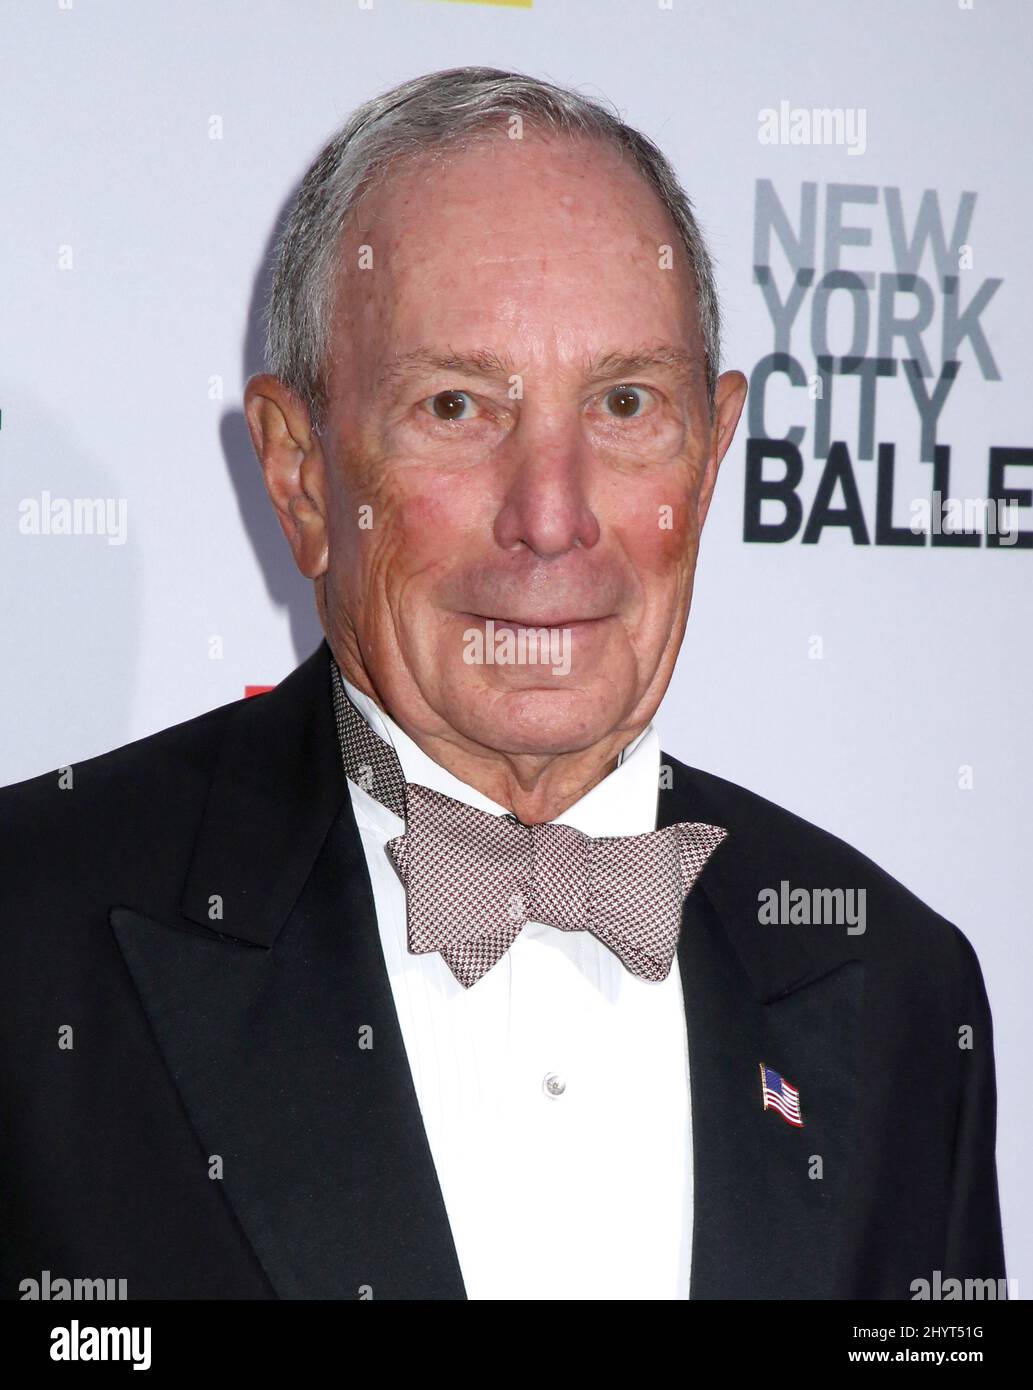 Michael Bloomberg nimmt an der Herbst Fashion Gala des New York City Ballet 2021 Teil, die am 30. September 2021 im David H. Koch Theatre im Lincoln Center in New York City, NY, stattfindet Stockfoto